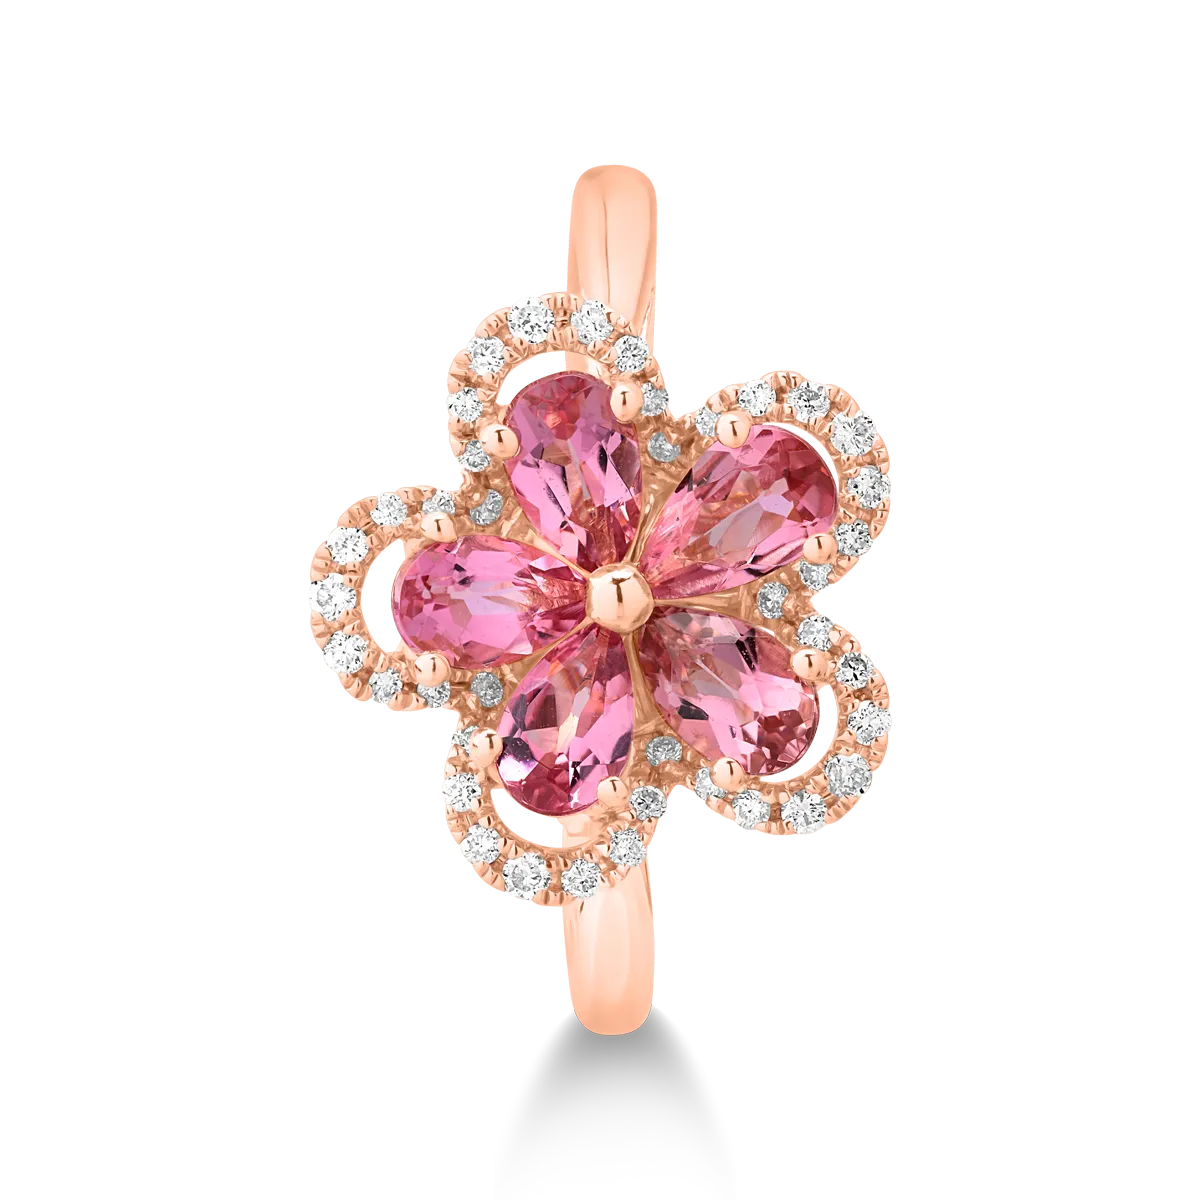 18 karátos rózsaszín arany gyűrű 1 karátos rózsaszín turmalinnal és 0.15 karátos gyémántokkal